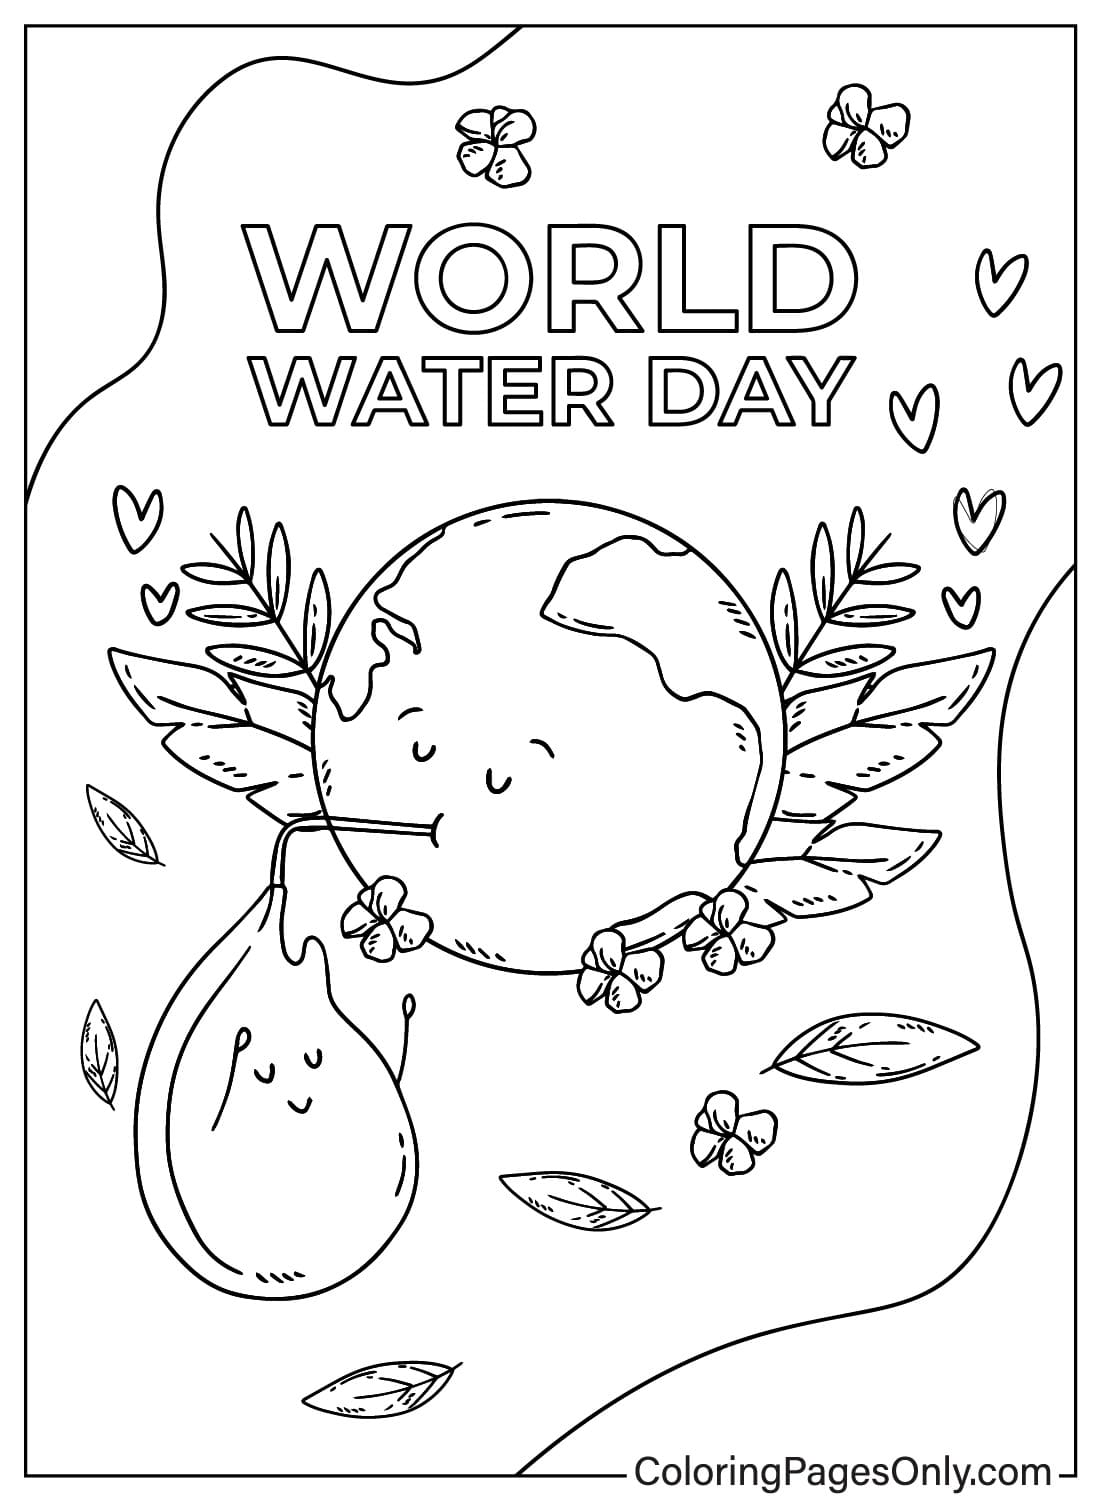 صفحة تلوين يوم الأرض والمياه العالمي من يوم المياه العالمي